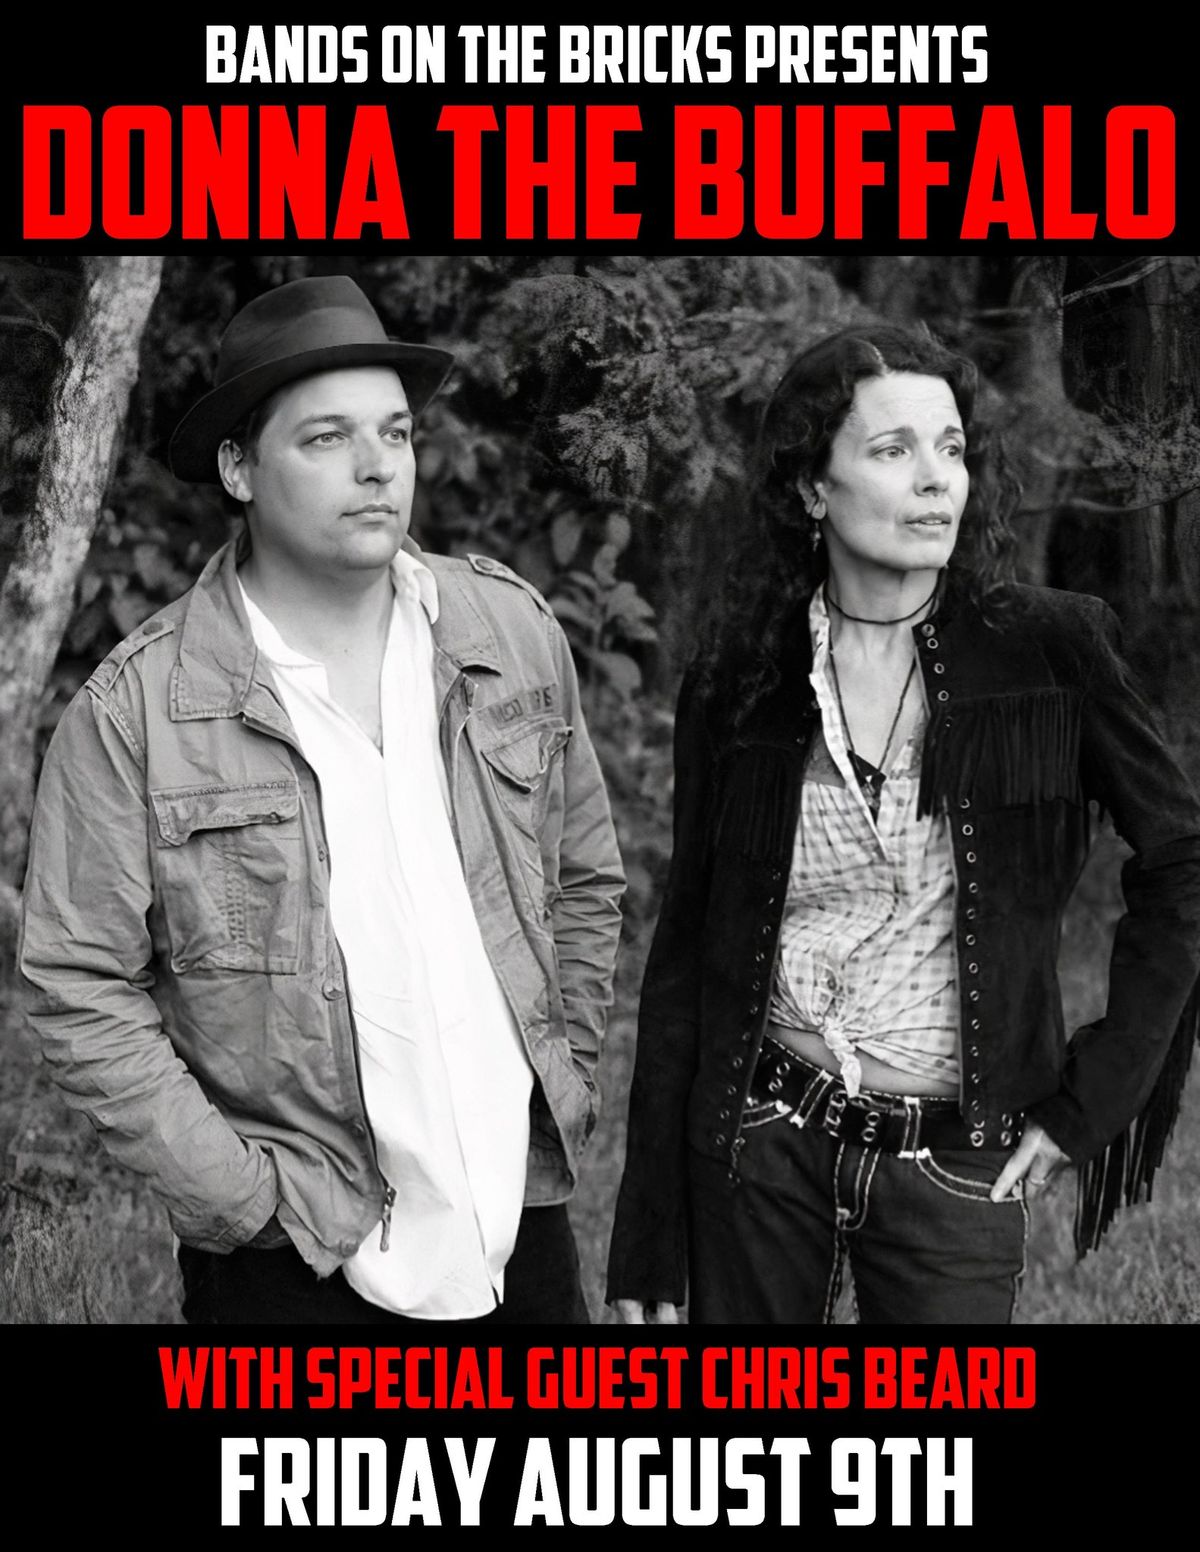 Donna The Buffalo: With Chris Beard